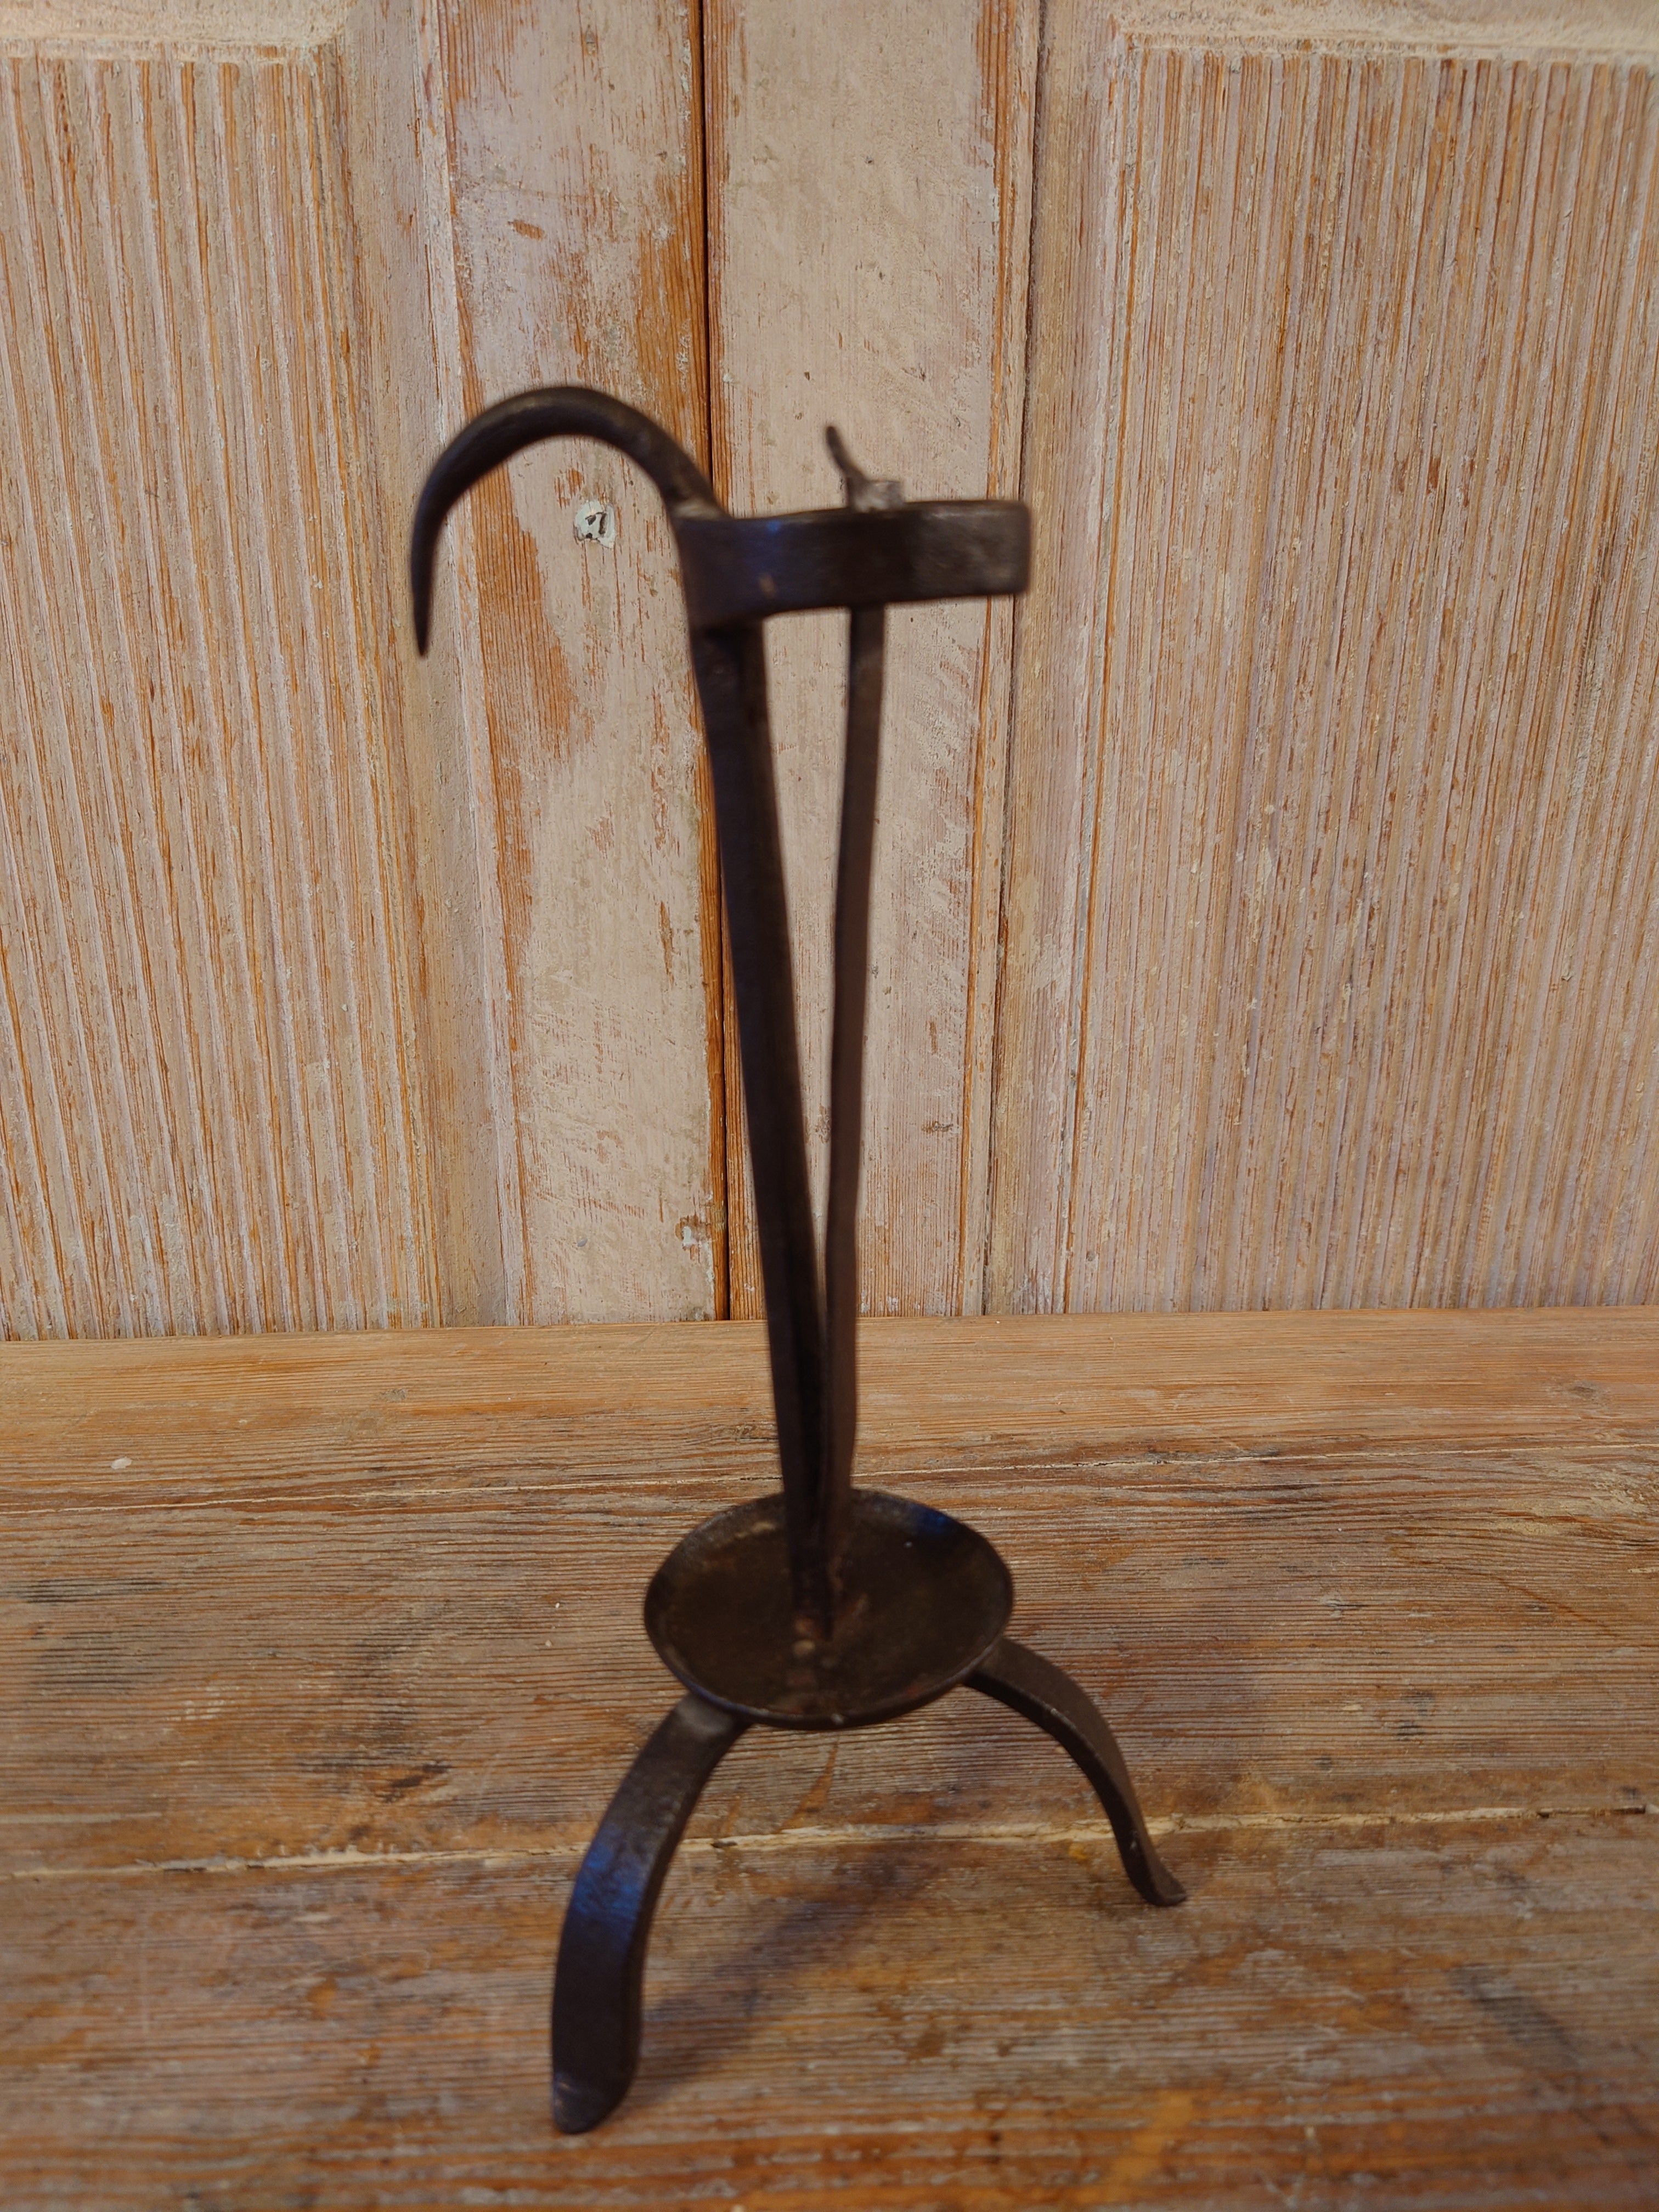 Ein alter antiker schwedischer Eisenleuchter aus dem 18.
Sehr charmant und solide.
Der Kerzenständer heißt auf Schwedisch 